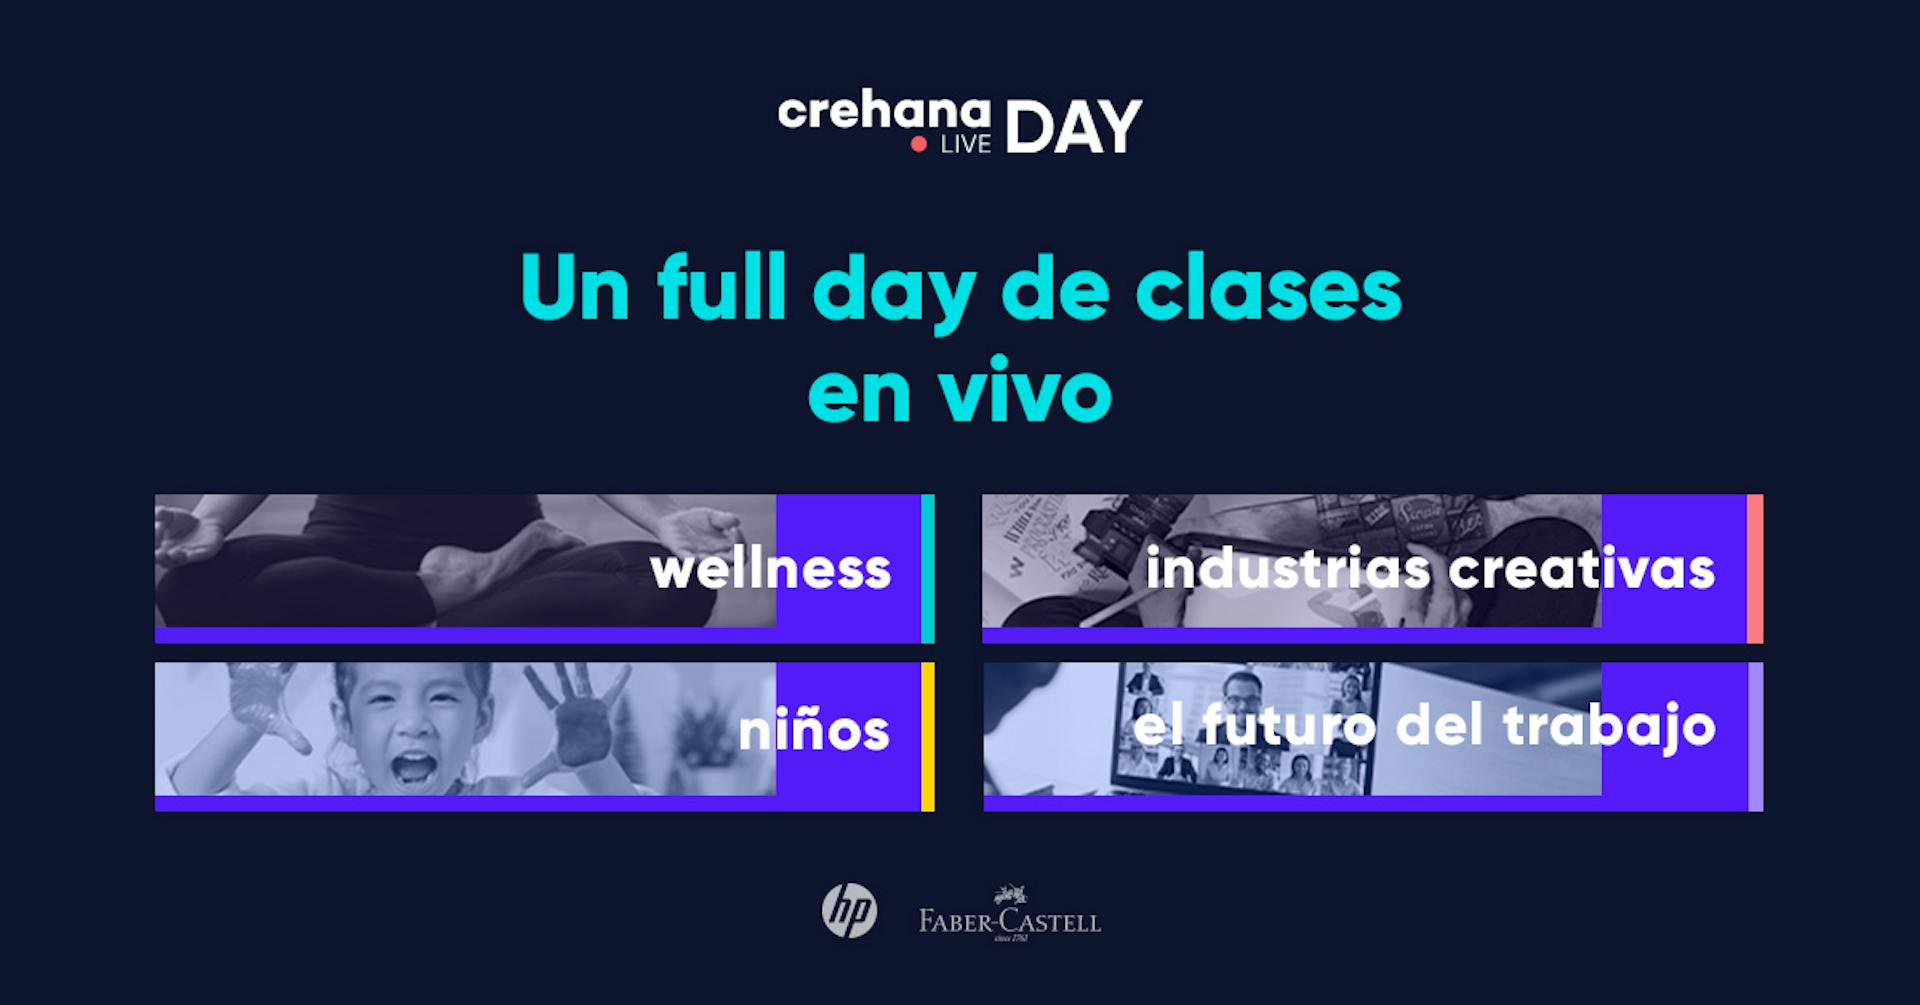 Crehana Day: Un full day de clases en vivo y sorpresas